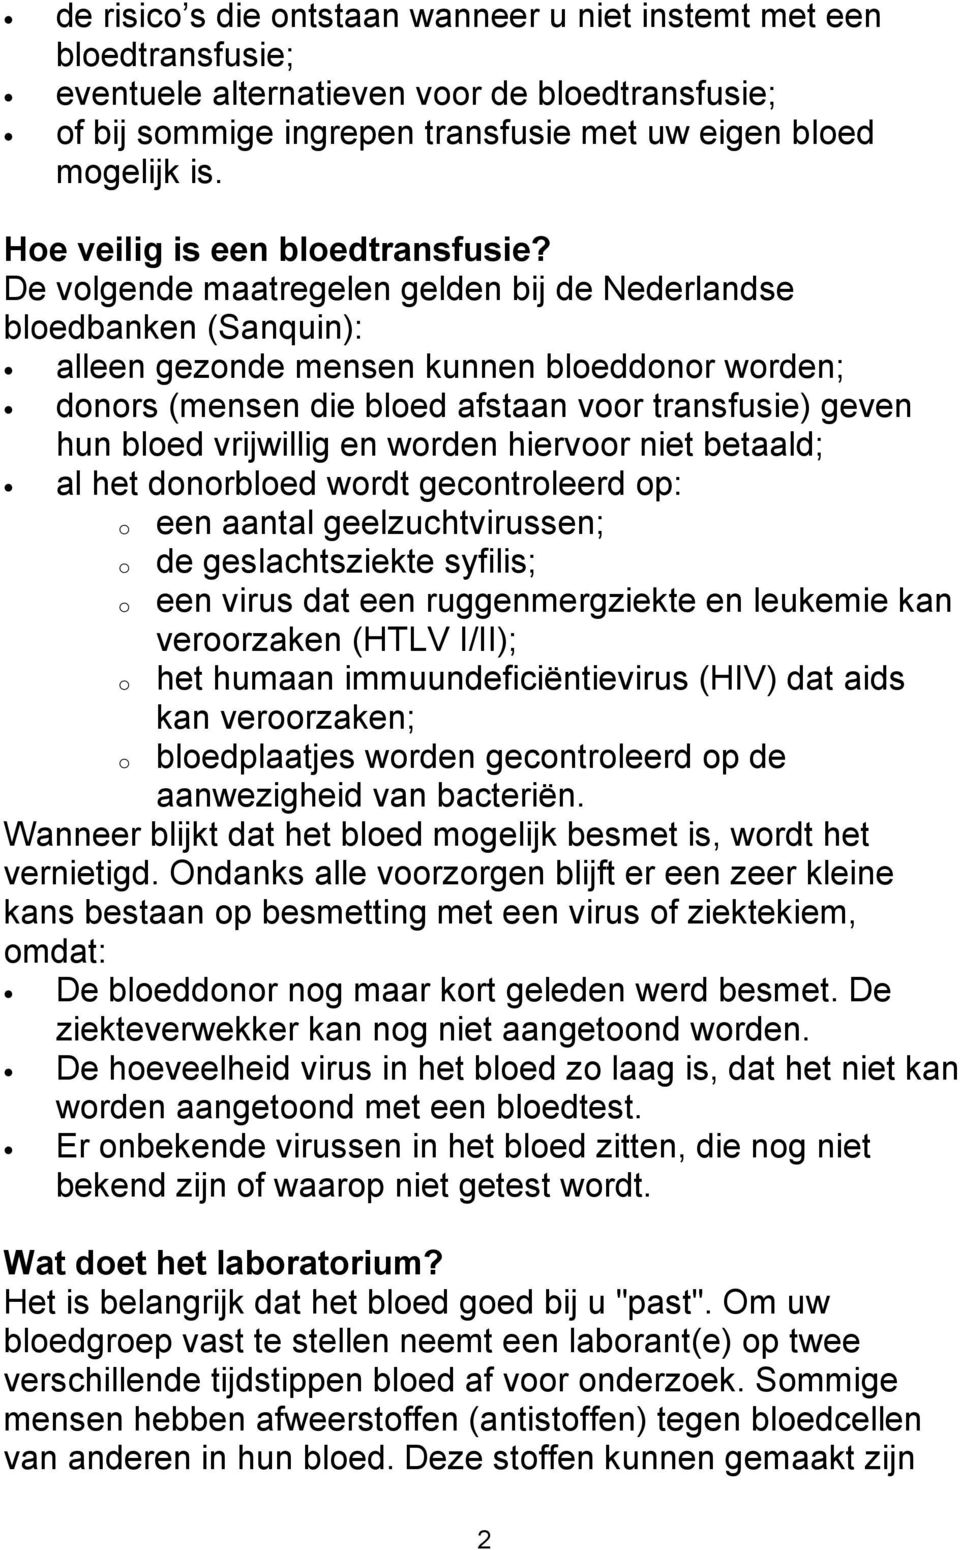 De volgende maatregelen gelden bij de Nederlandse bloedbanken (Sanquin): alleen gezonde mensen kunnen bloeddonor worden; donors (mensen die bloed afstaan voor transfusie) geven hun bloed vrijwillig